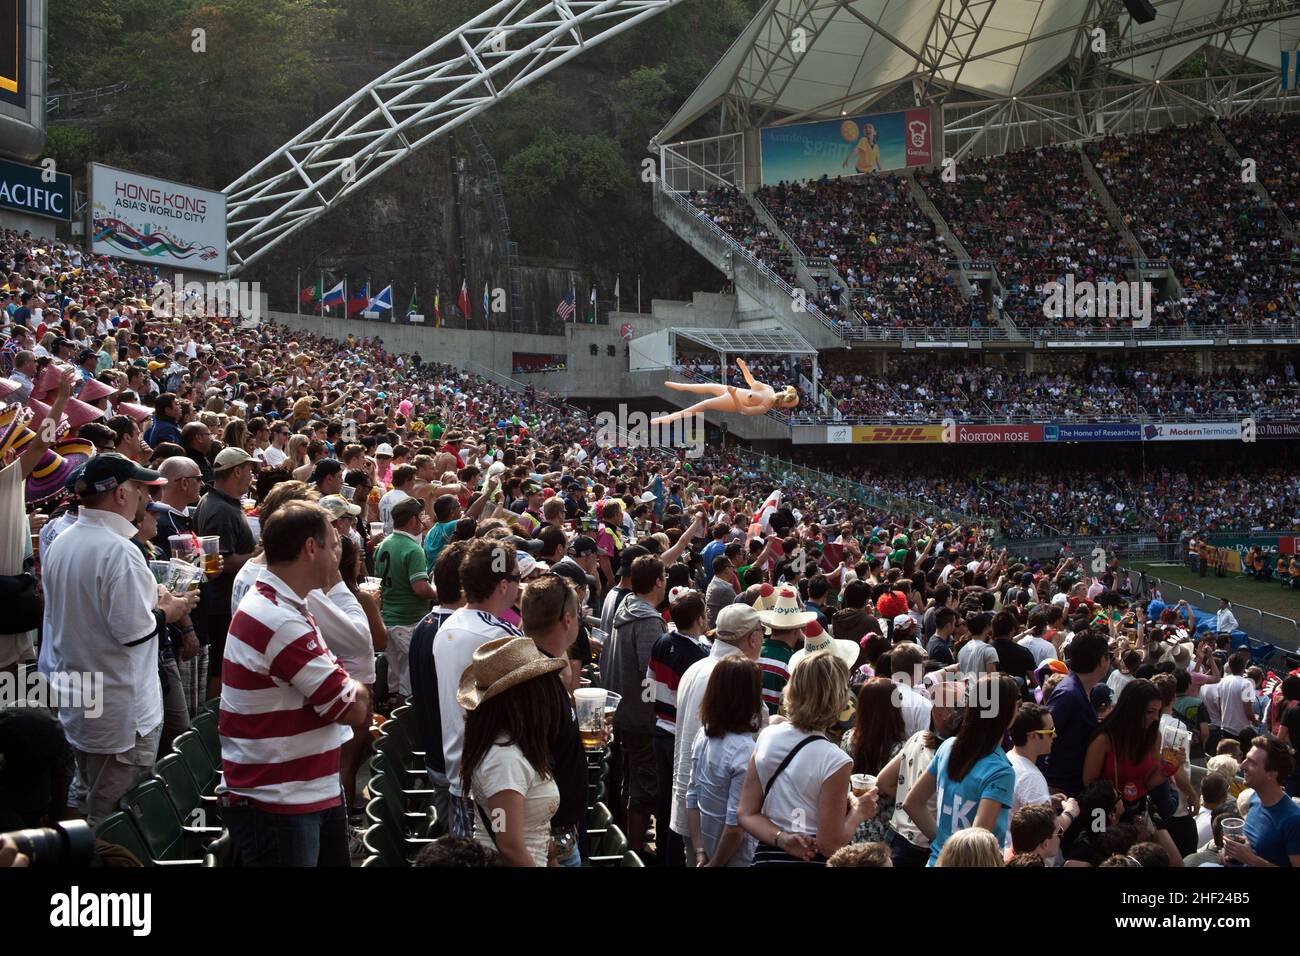 La multitud, en el estadio de Hong Kong, durante los Sevens de Hong Kong. Se considera el torneo de rugby más importante del mundo en 7s. Foto de stock